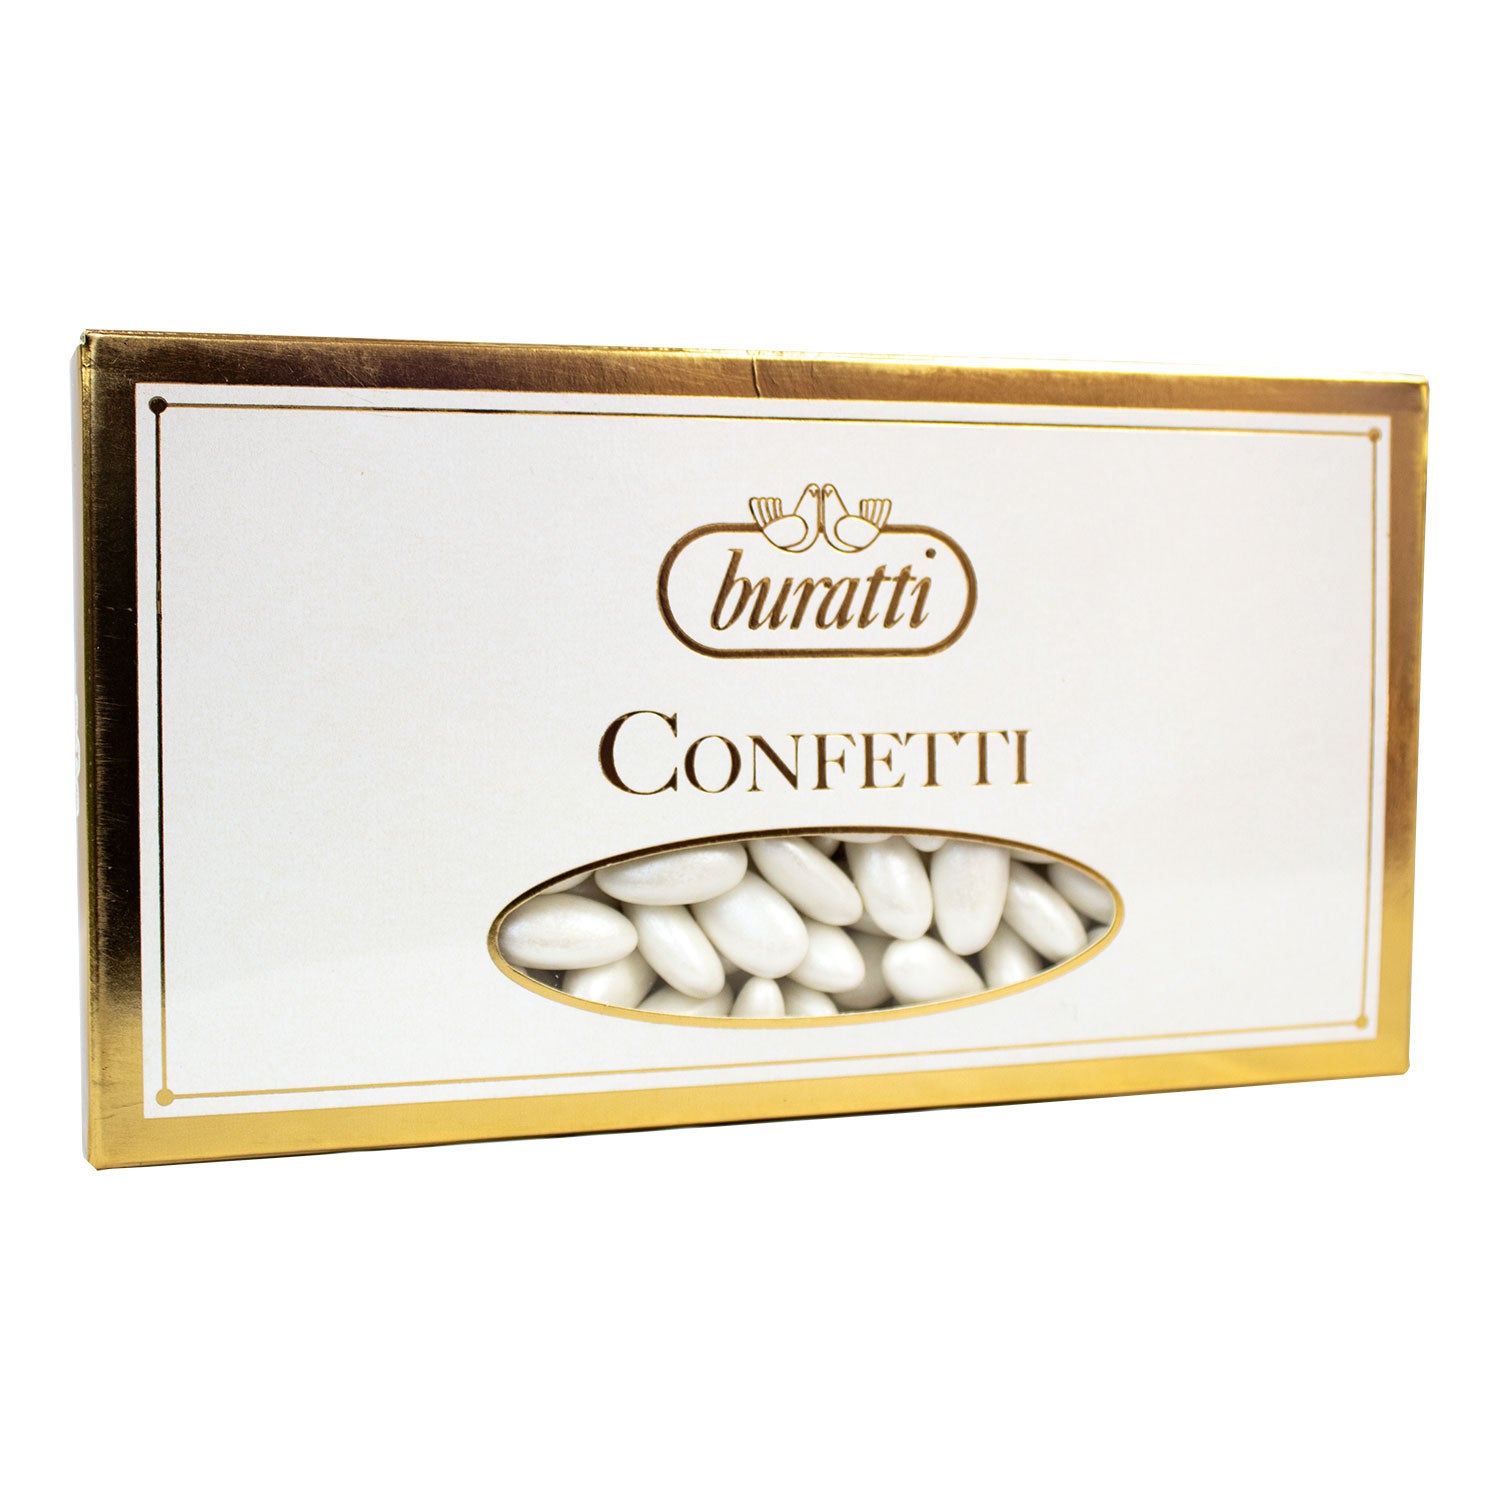 Buratti Confetti Perlati Bianchi - 1 kg – dolcincasa